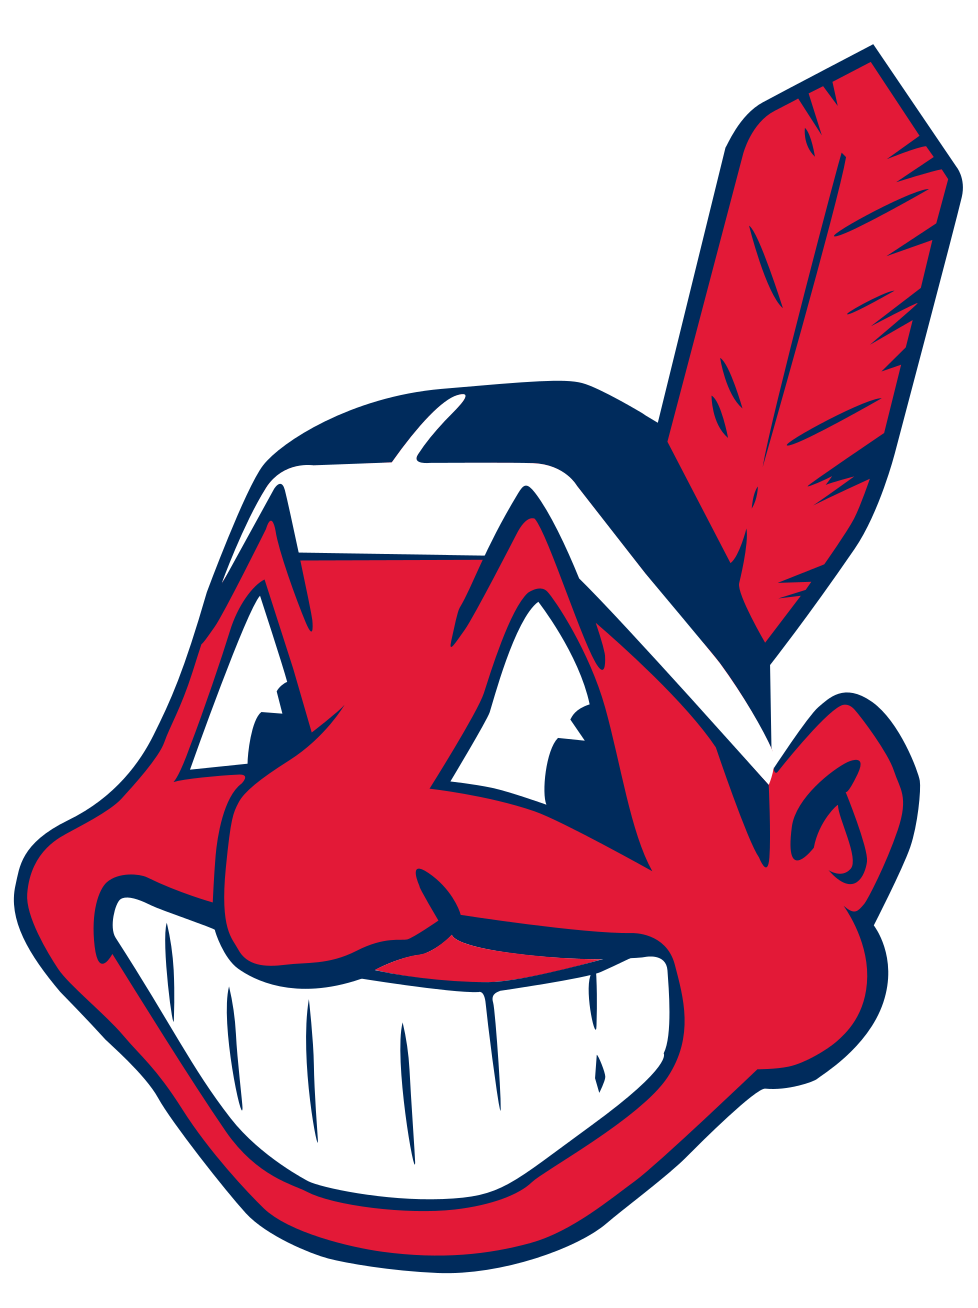 Cleveland Indians Sports Team Logo Designs.ai Lo que hace un gran logotipo